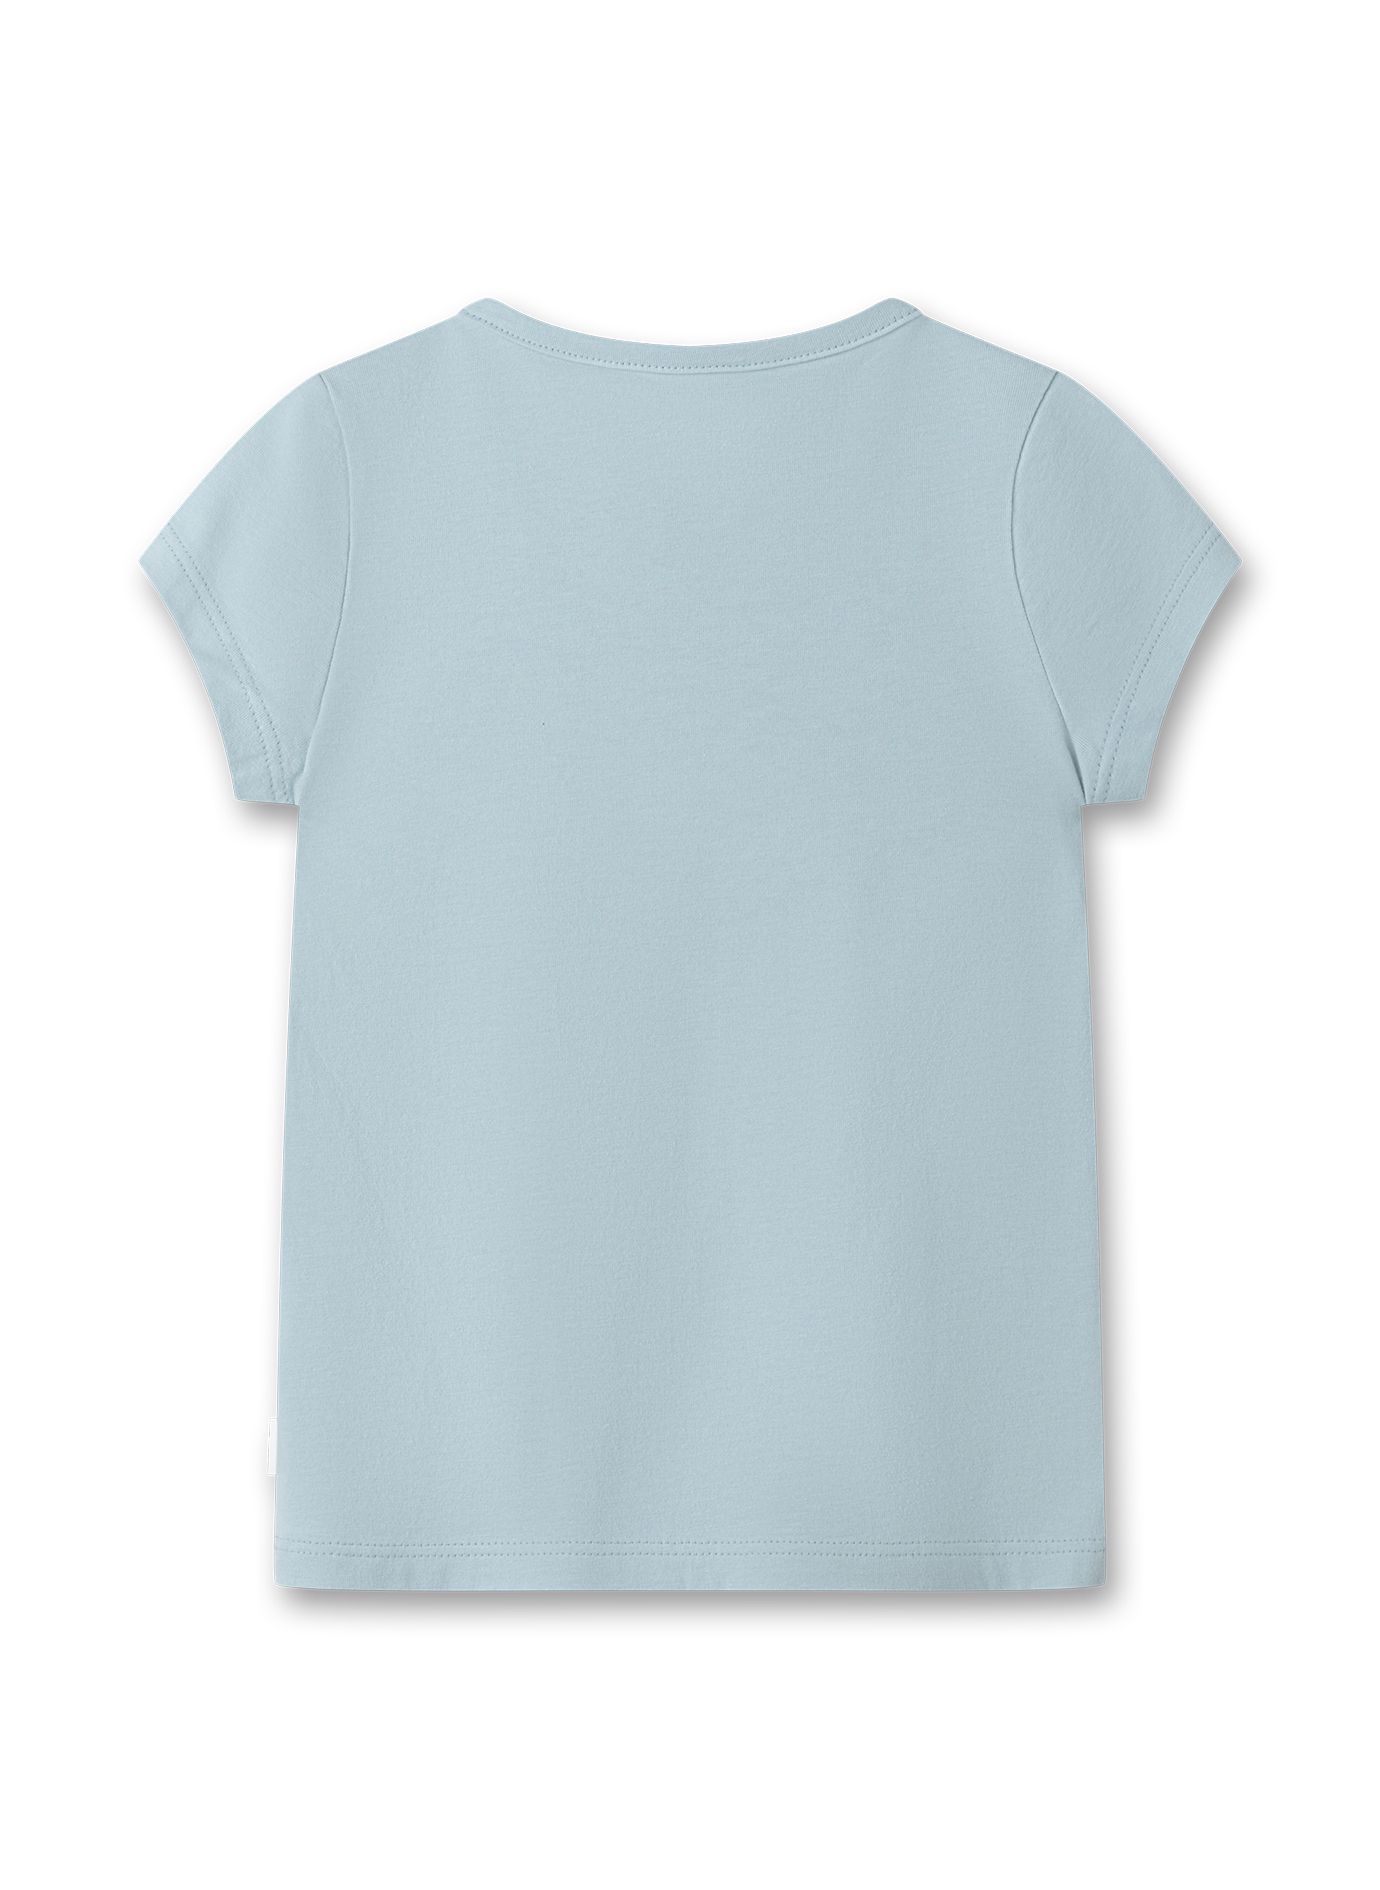 Mädchen T-Shirt Blau